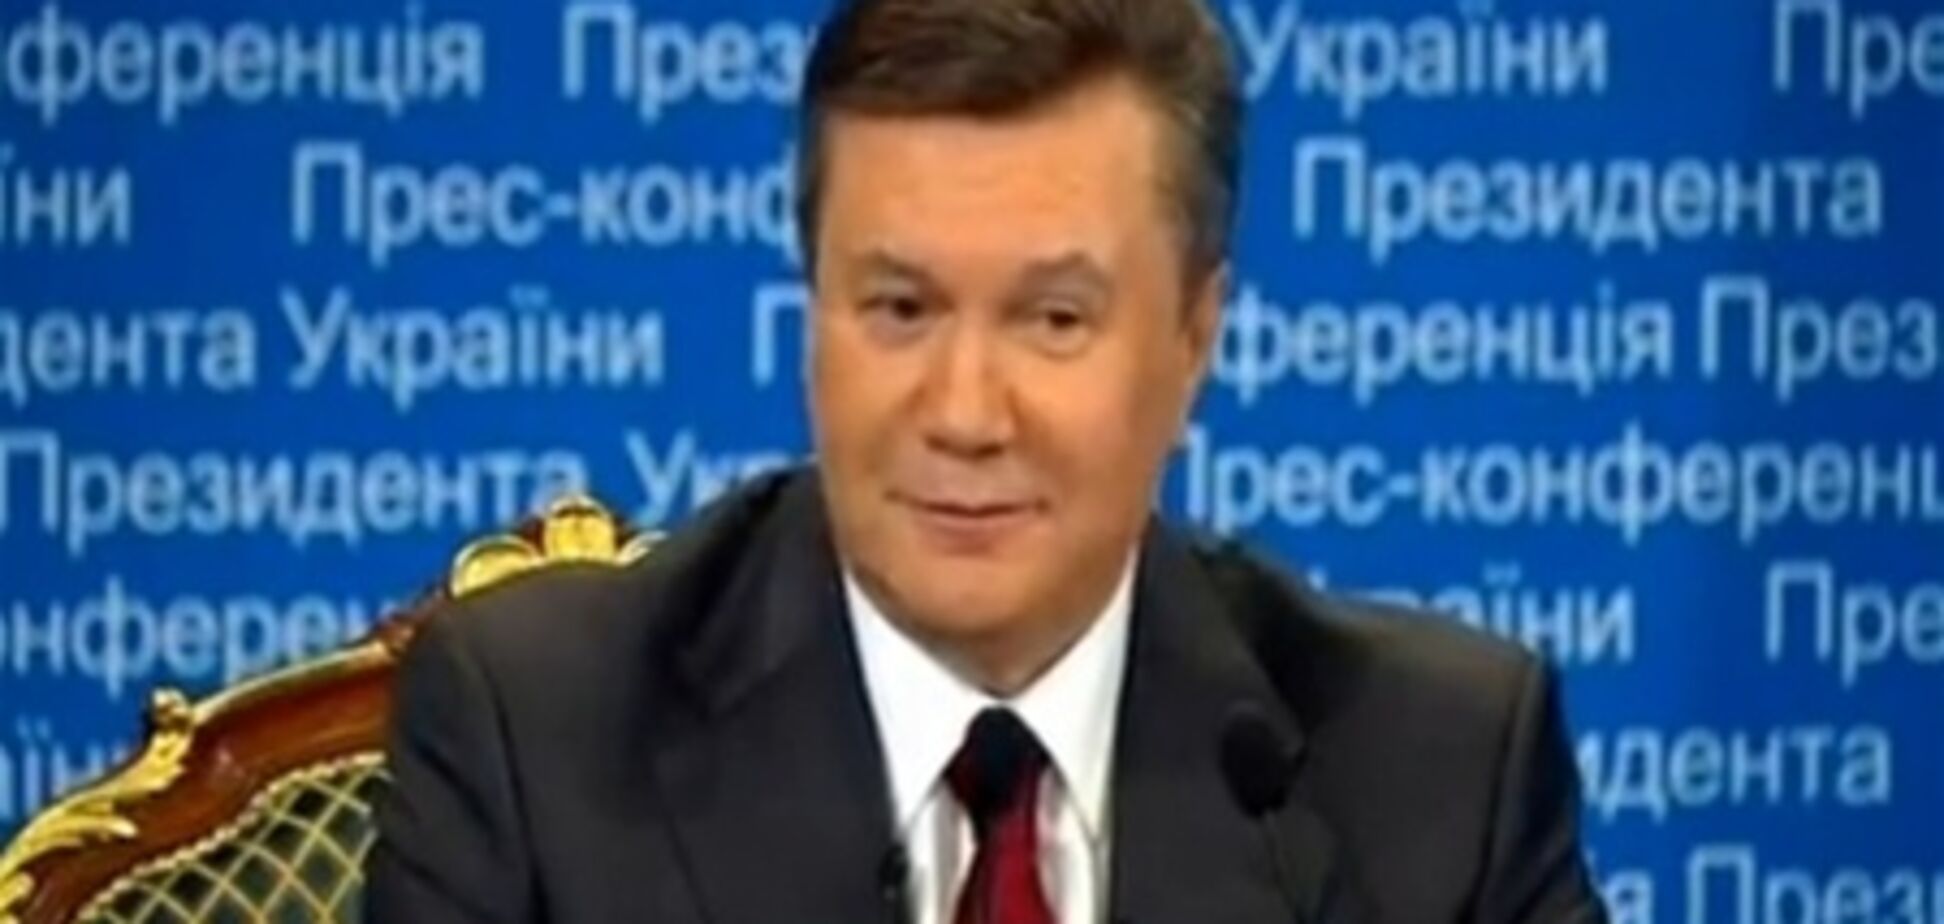 Експерт: Янукович - державний менеджер, а не лідер